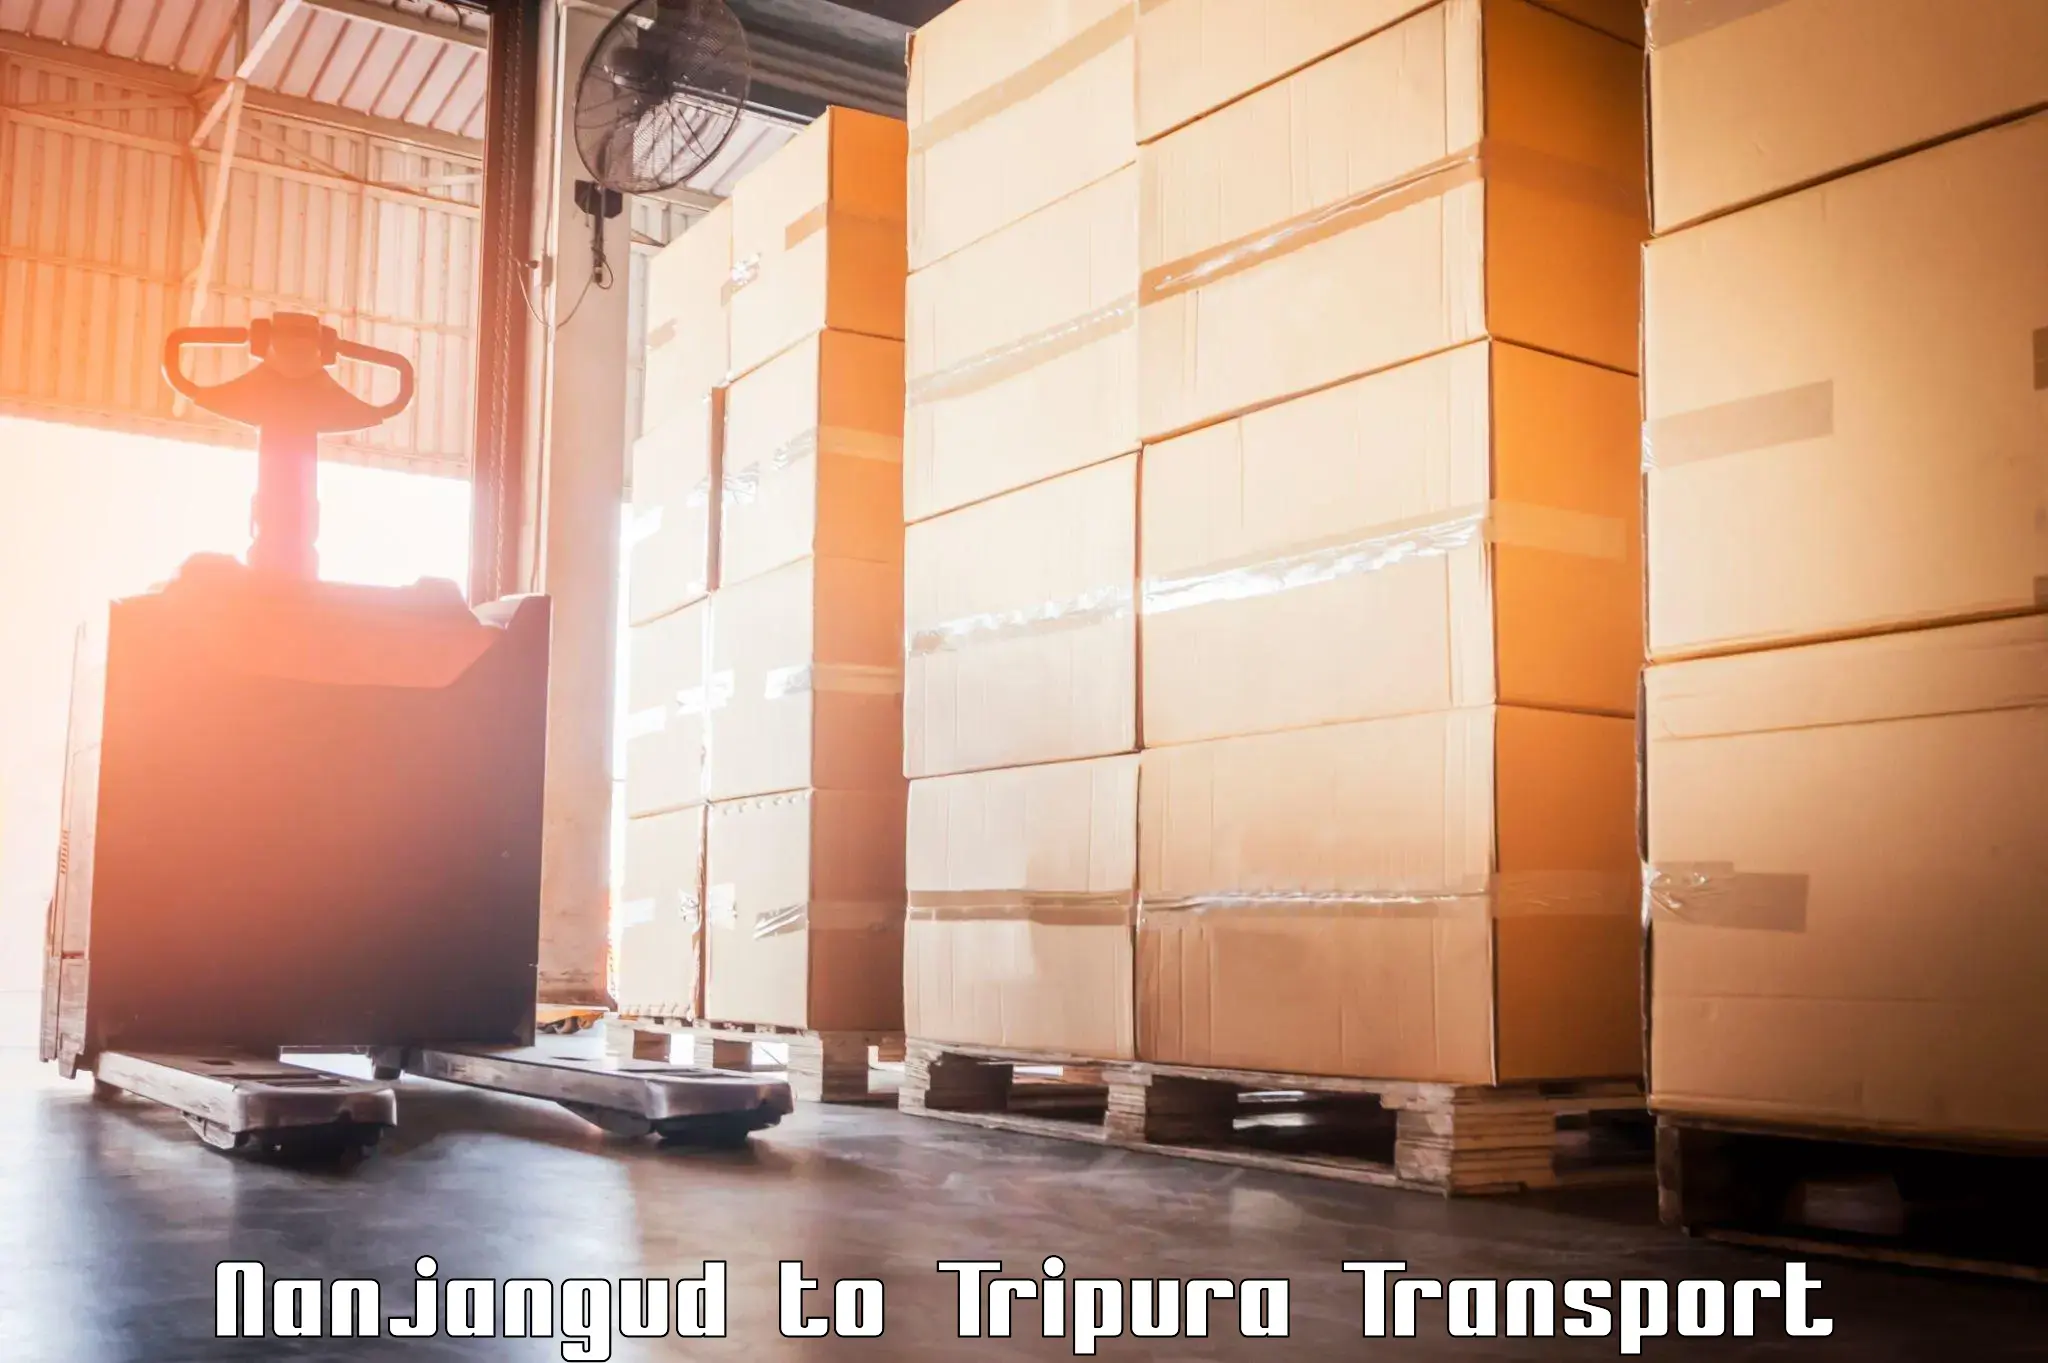 Parcel transport services Nanjangud to Tripura